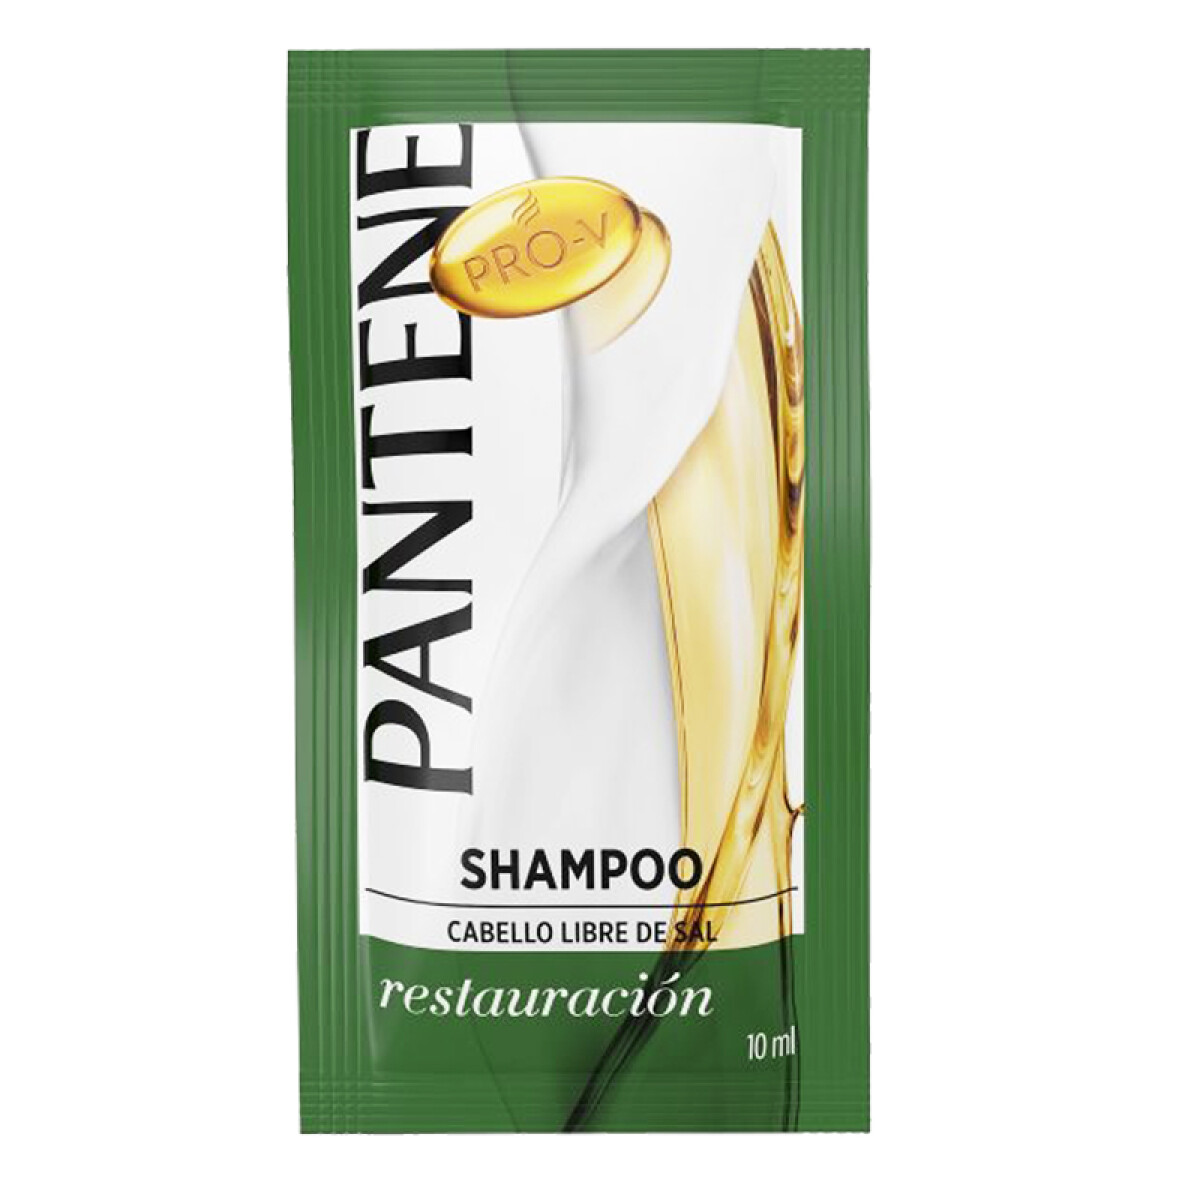 Sachet PANTENE 10ml x24 unidades - Shampoo Restauración 